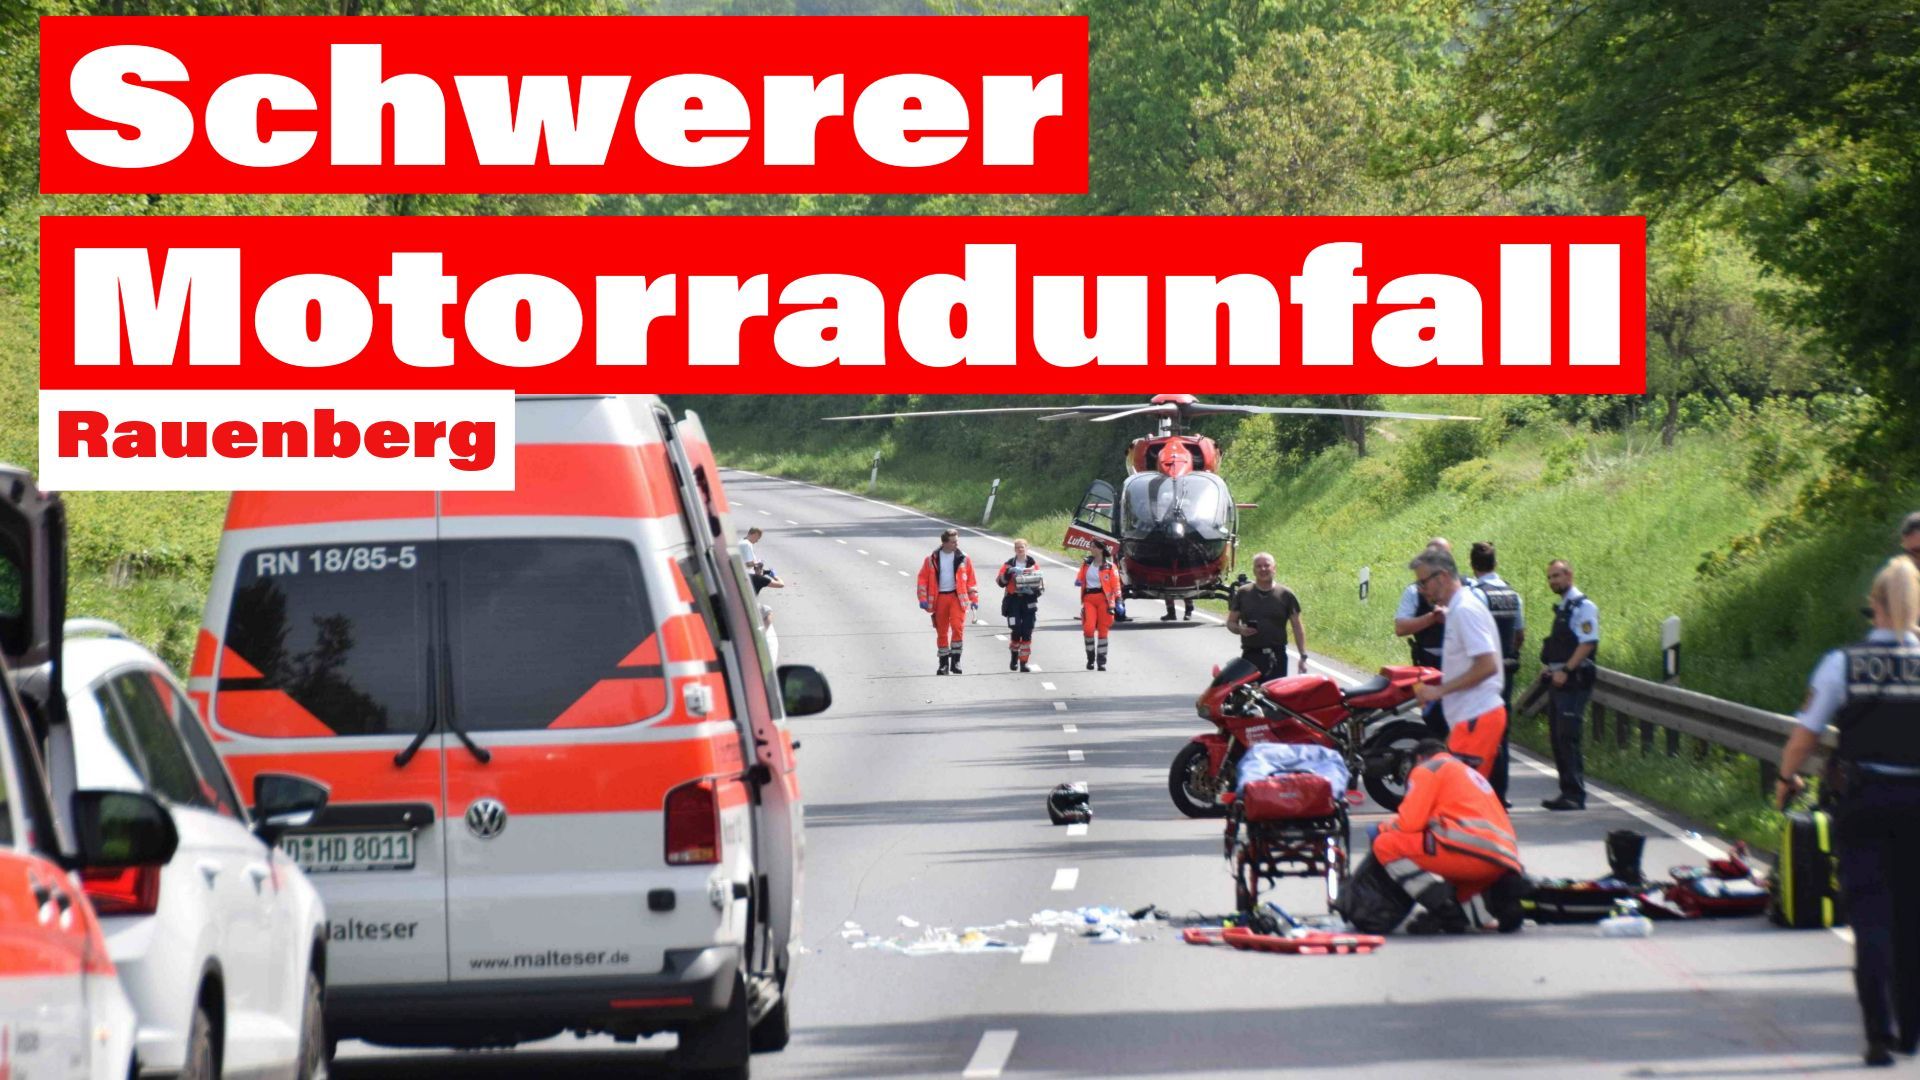 Schwerer Motorradunfall auf B39 bei Rauenberg: Lebensgefahr nach Helmverlust